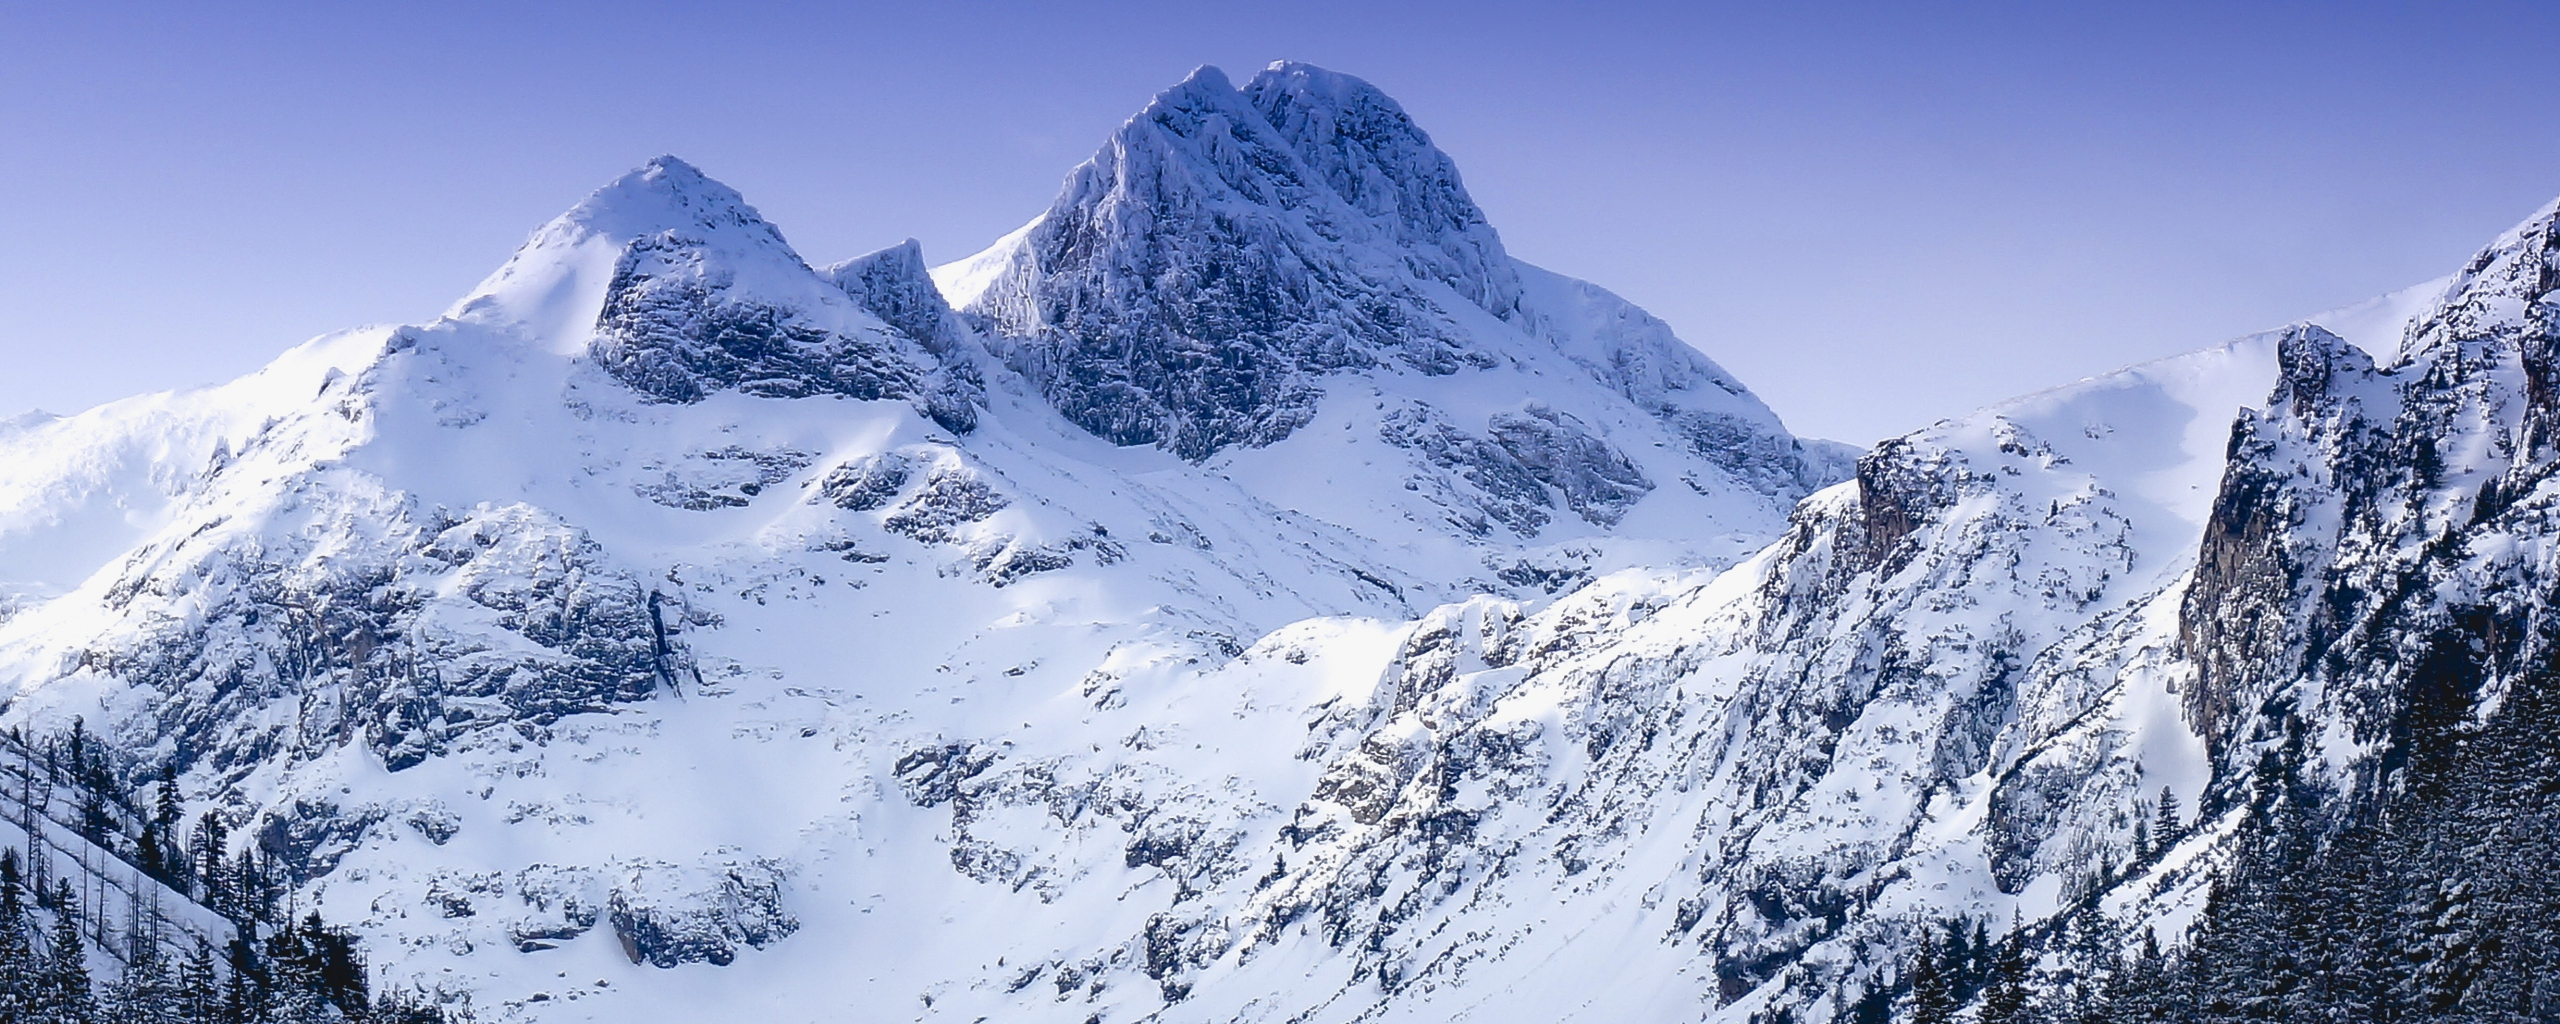 Winter, glacier, mountain, nature, 2560x1024 wallpaper